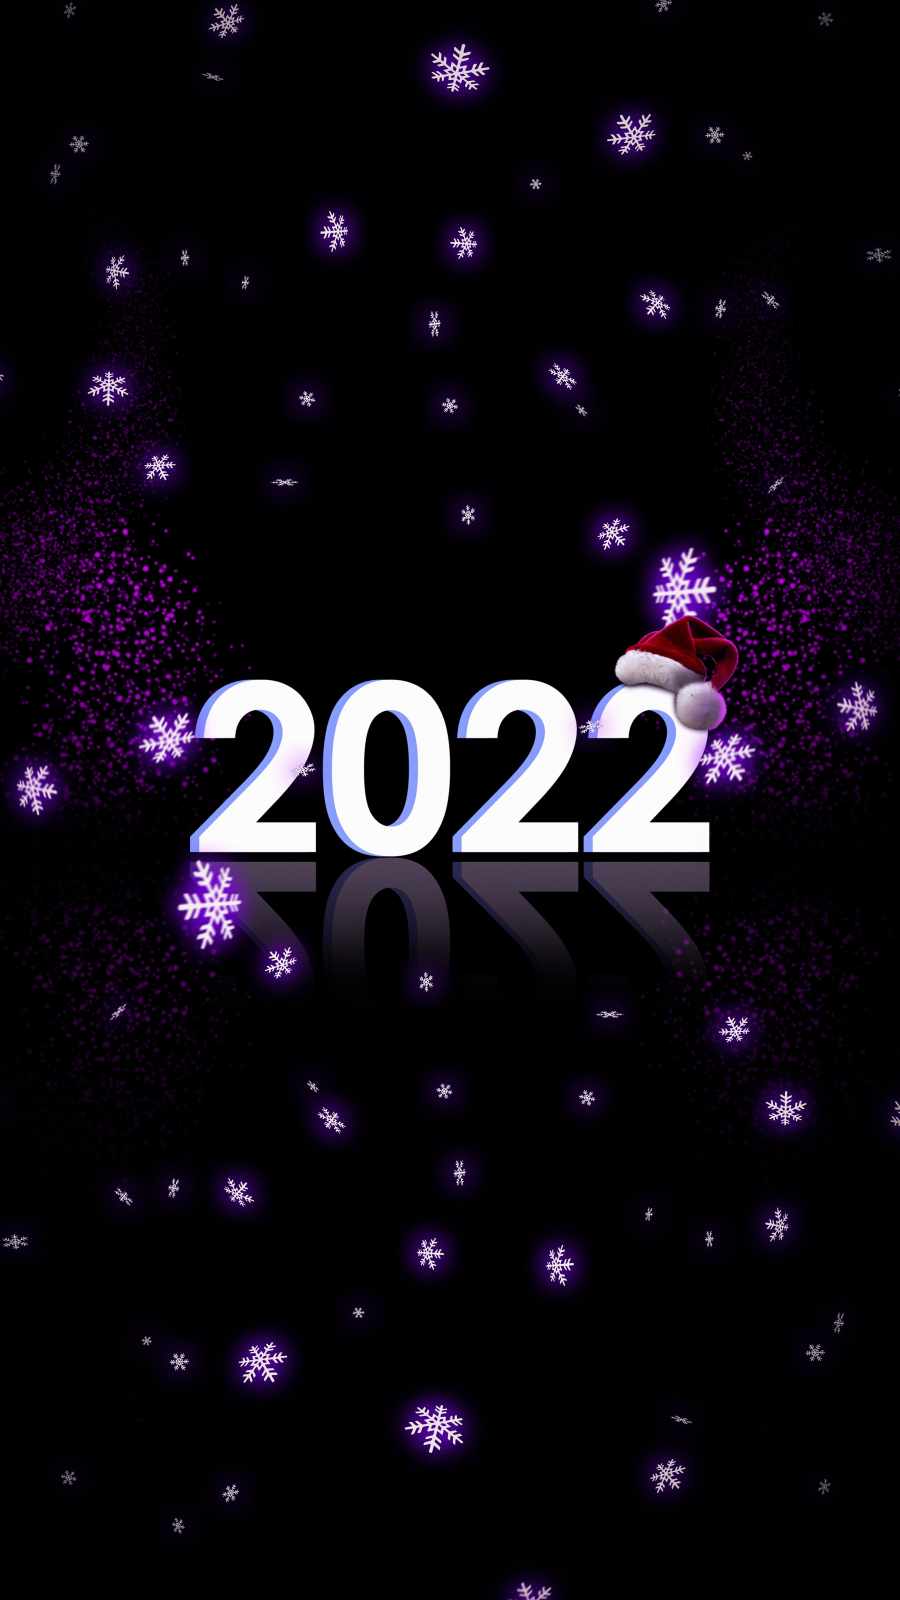 Chrtistmas 2022 Celebration iPhone Wallpaper